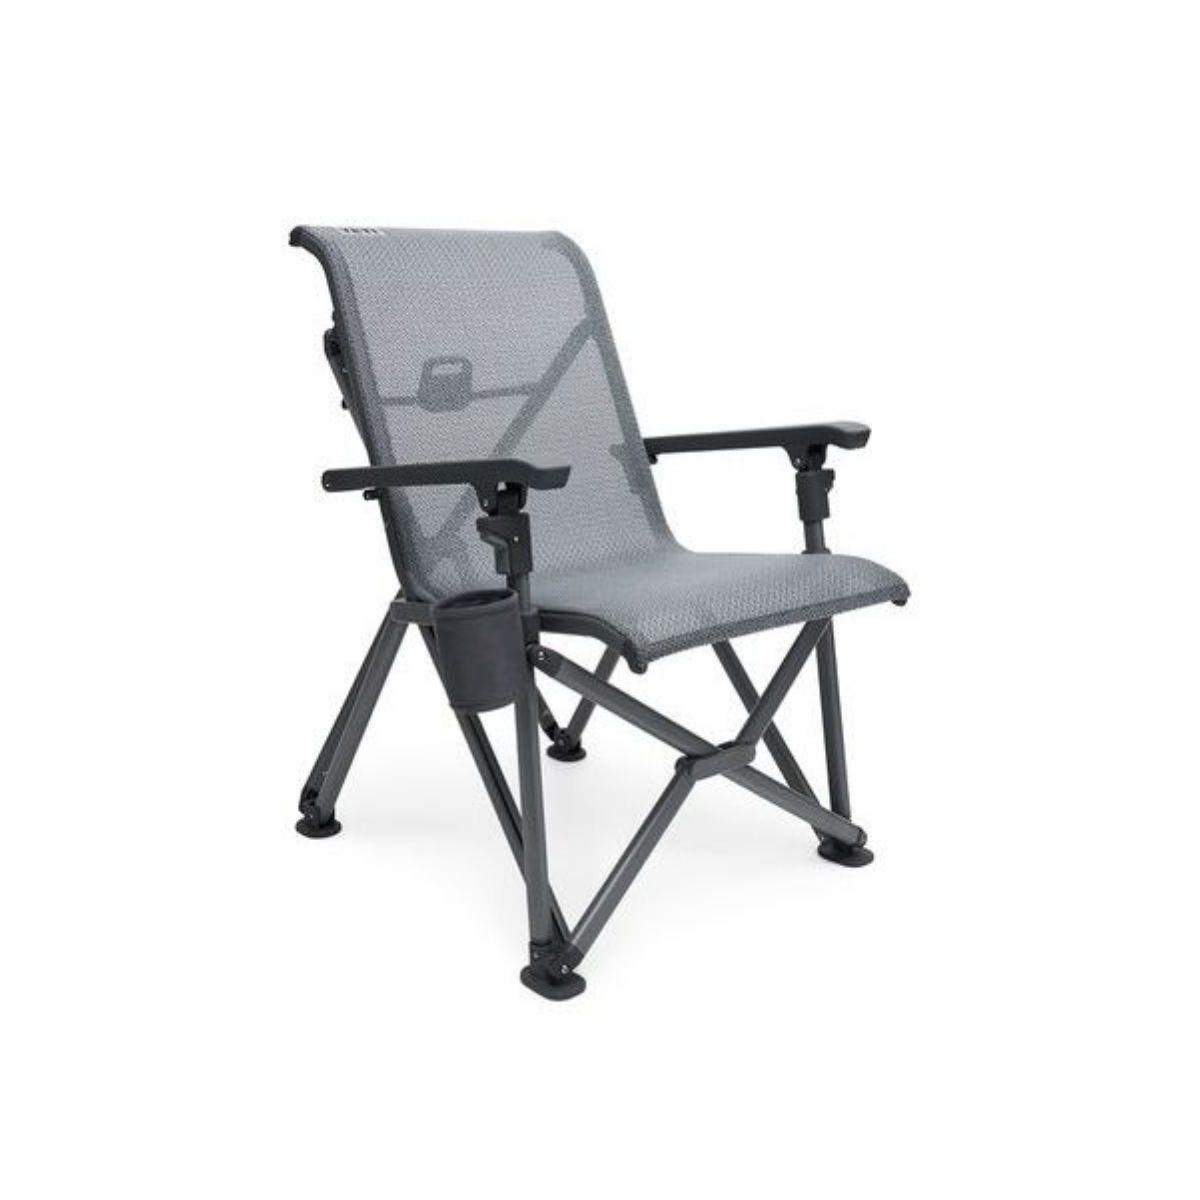 Yeti Trailhead Camp Chair - Silla de camping